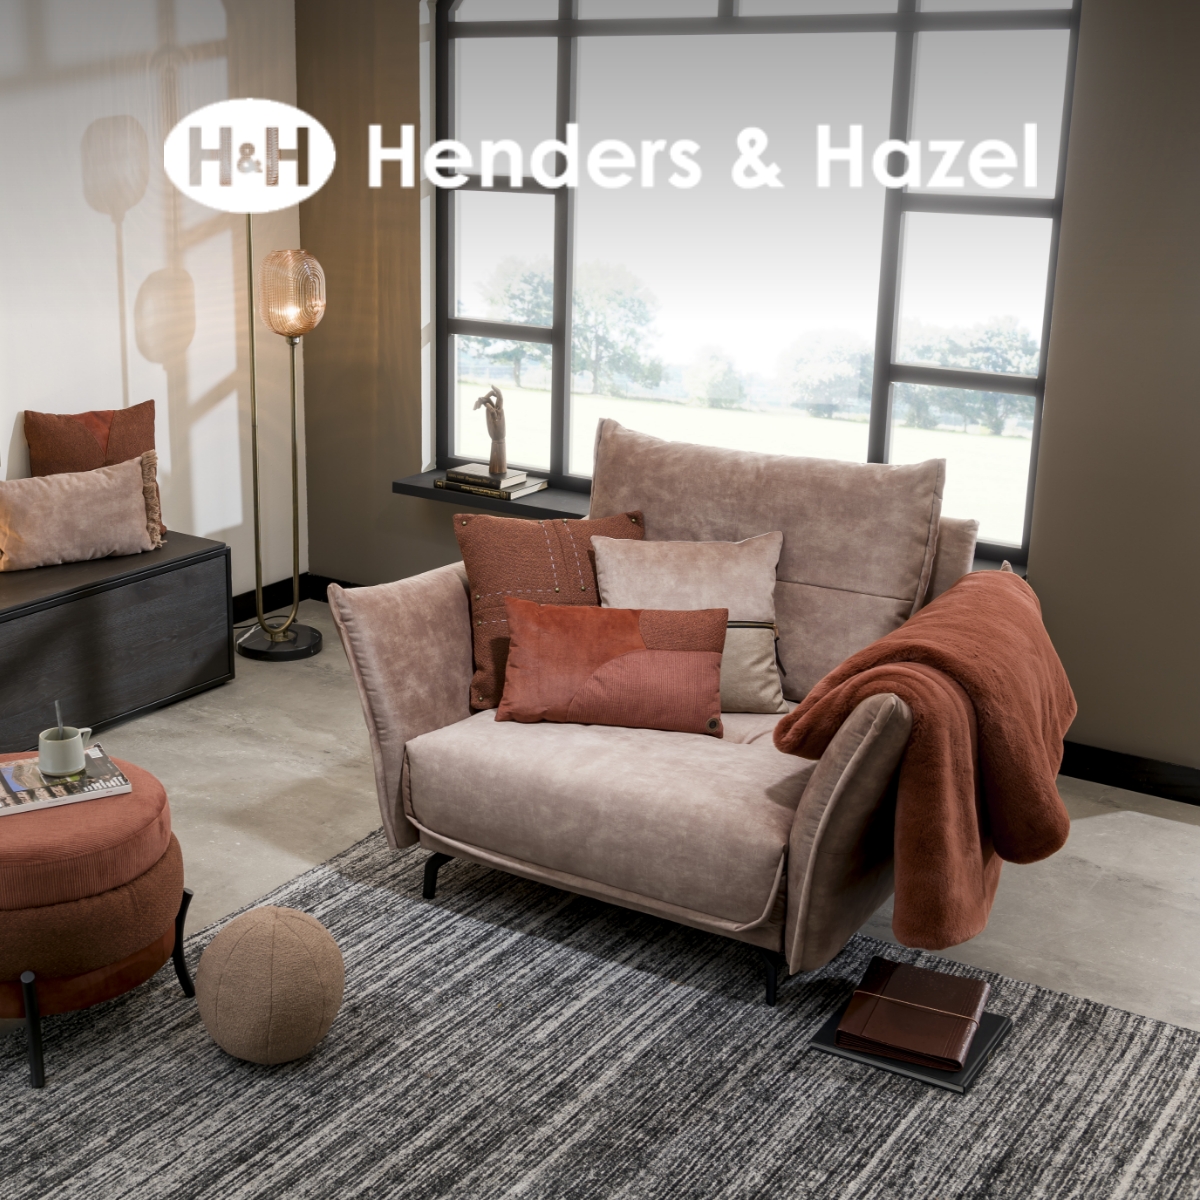 Henders & Hazel: Jouw smaak, jouw stijl, jouw thuis